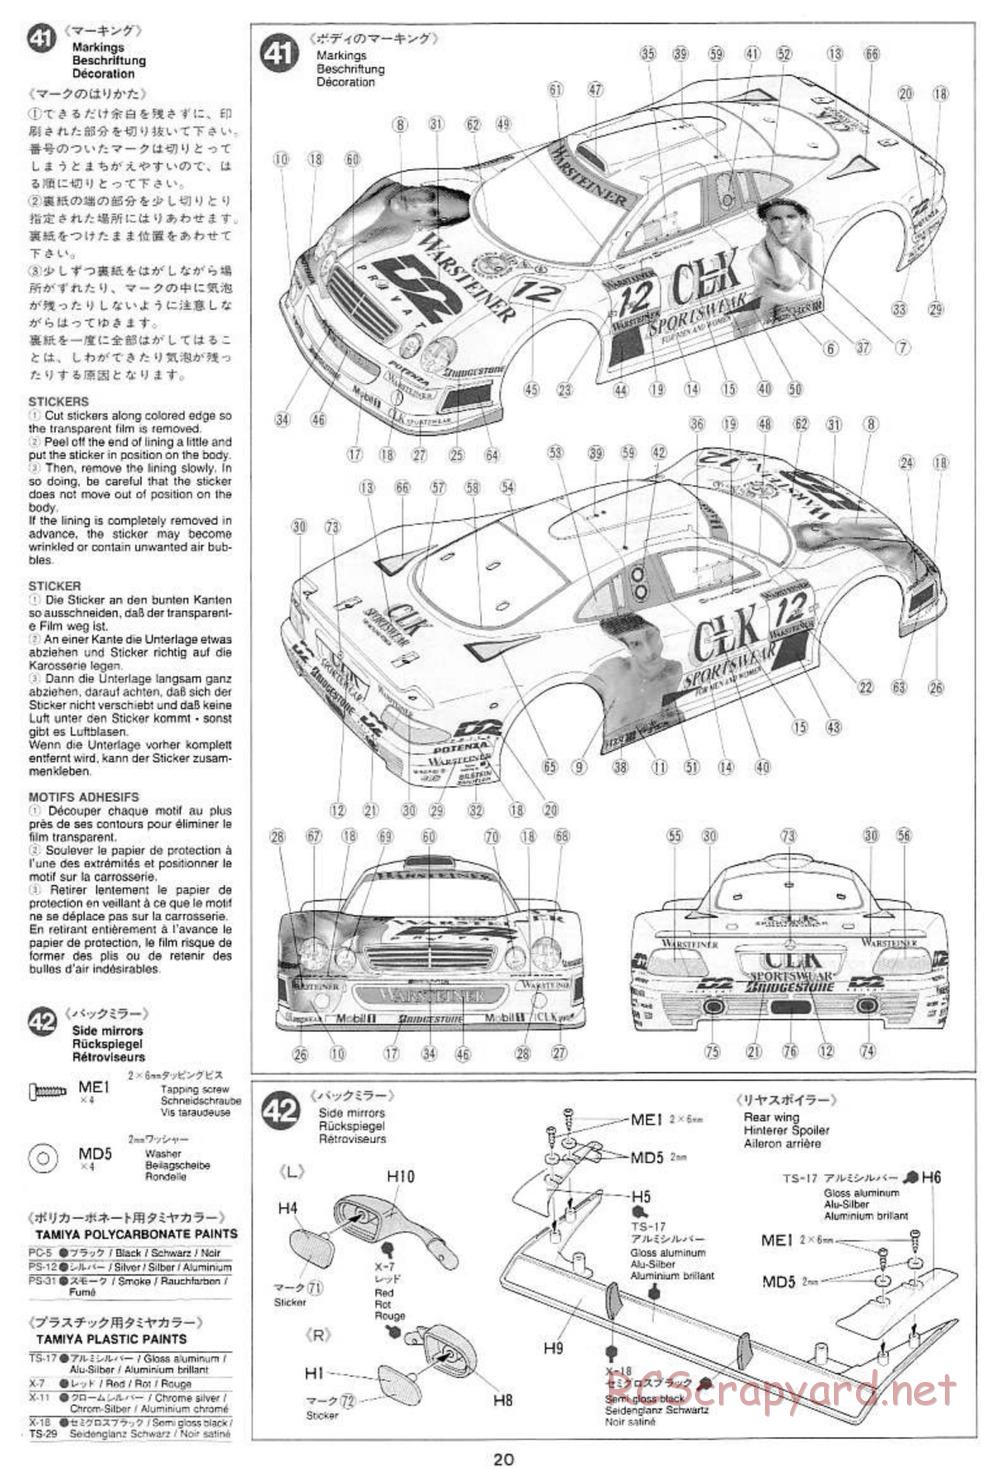 Tamiya - Mercedes CLK GTR Team Sportswear - TG10 Mk.1 Chassis - Manual - Page 20